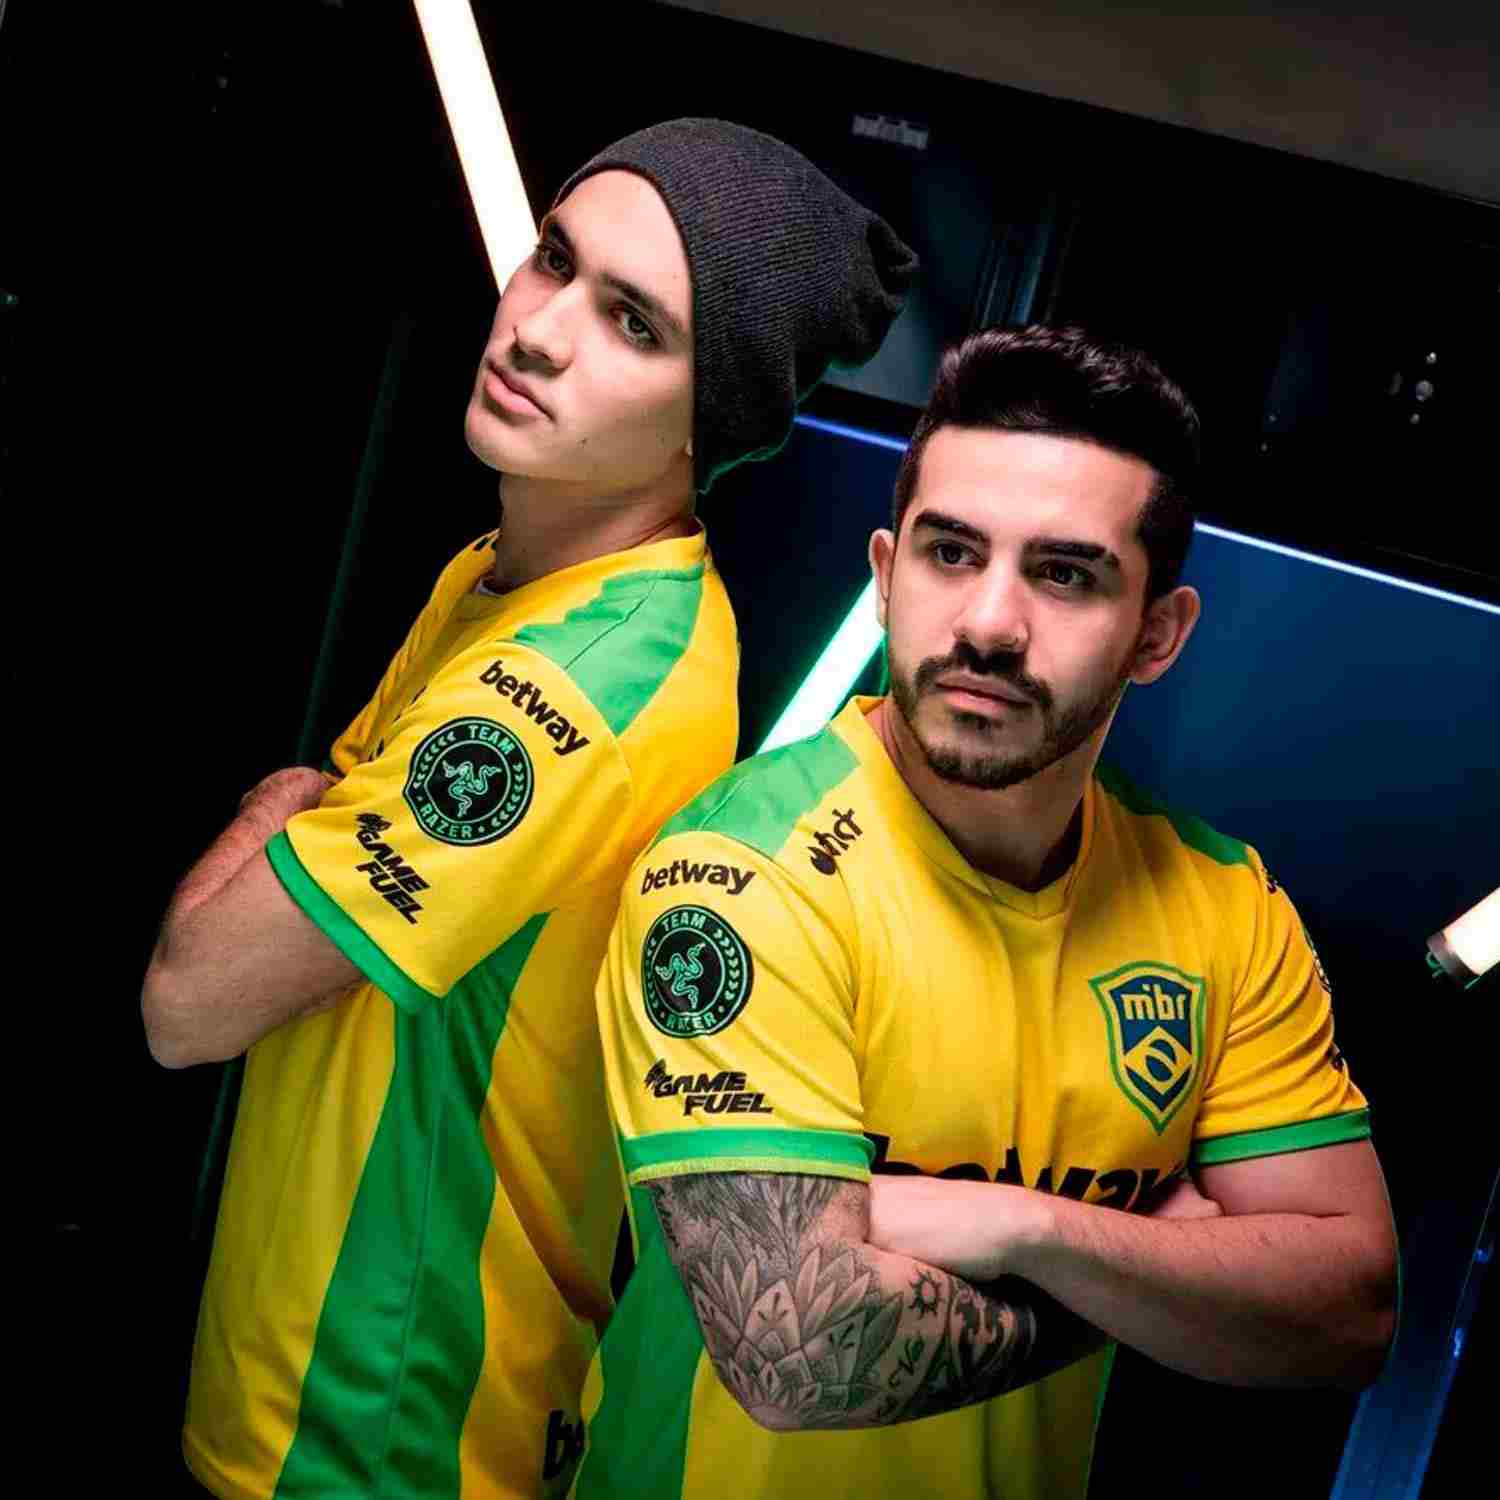 00 Nation reúne a dos leyendas del CS:GO brasileño en su roster